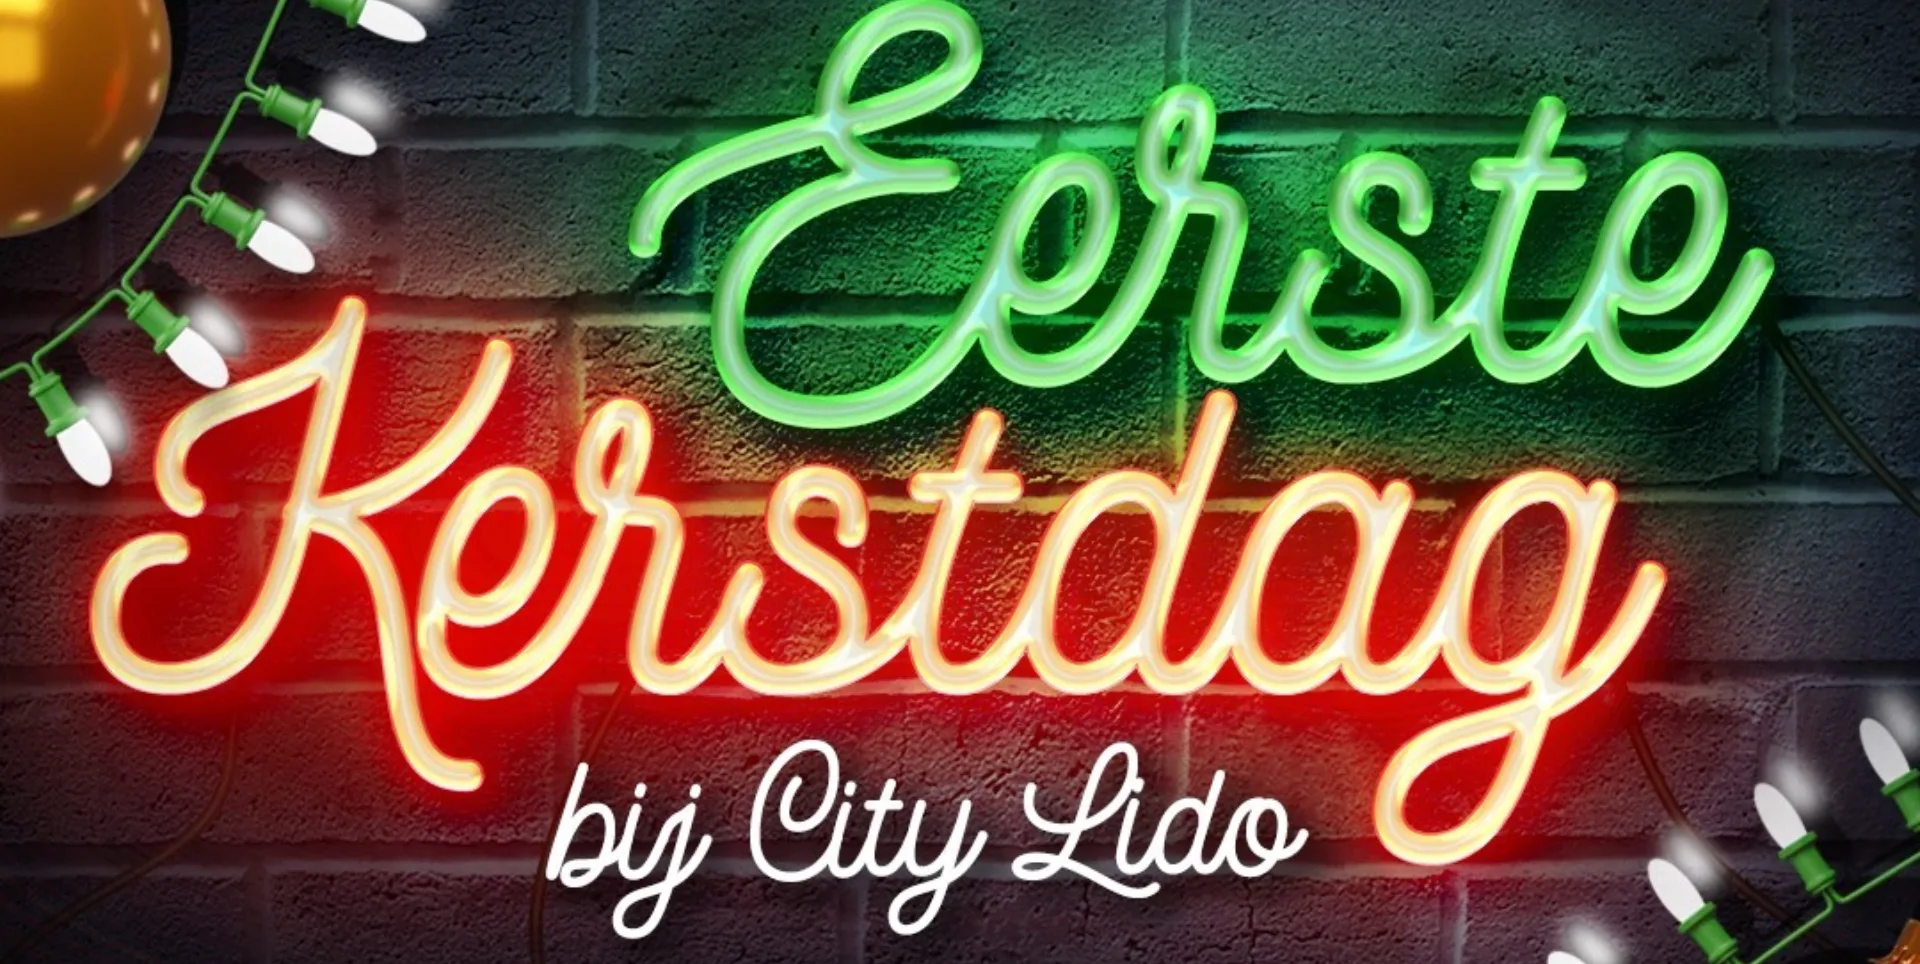 Eerste kerstdag bij City Lido